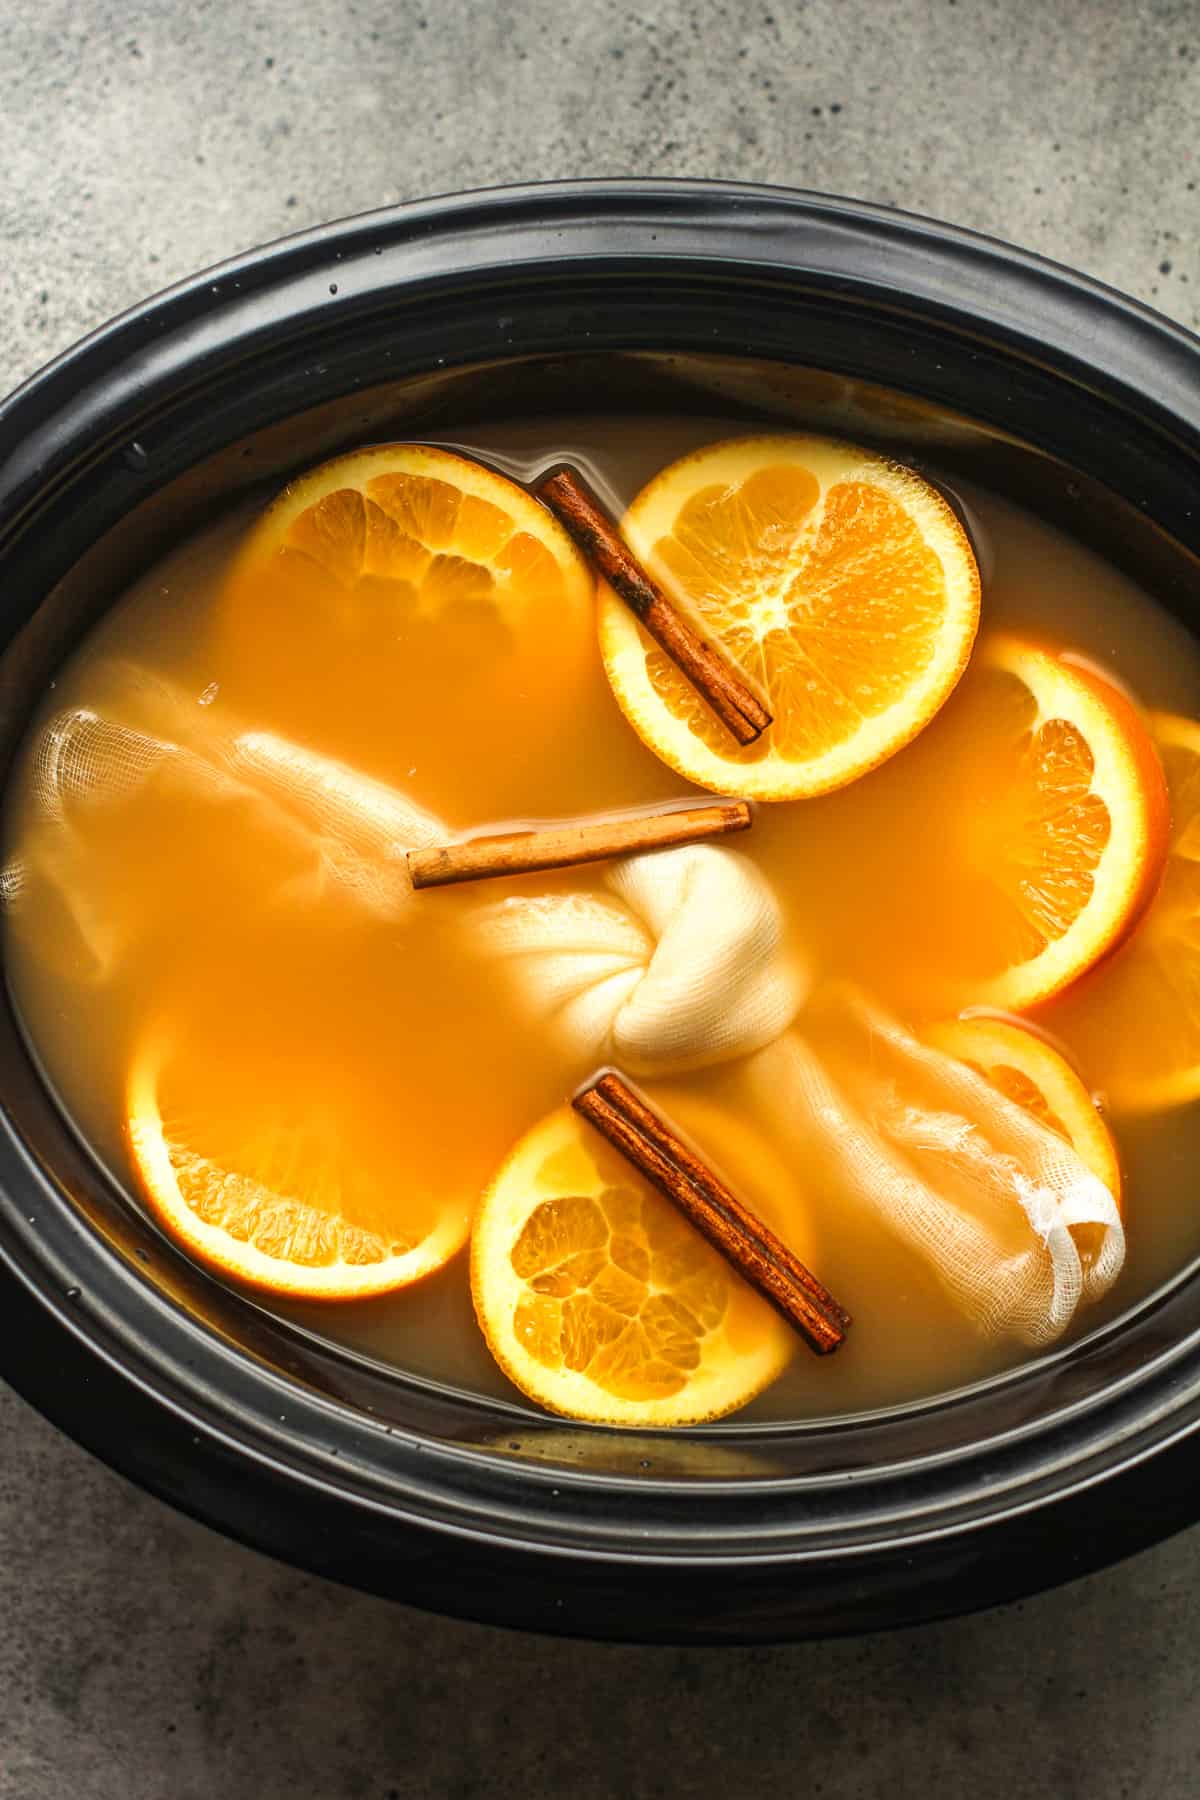 A crock pot of cider with orange slices etc.